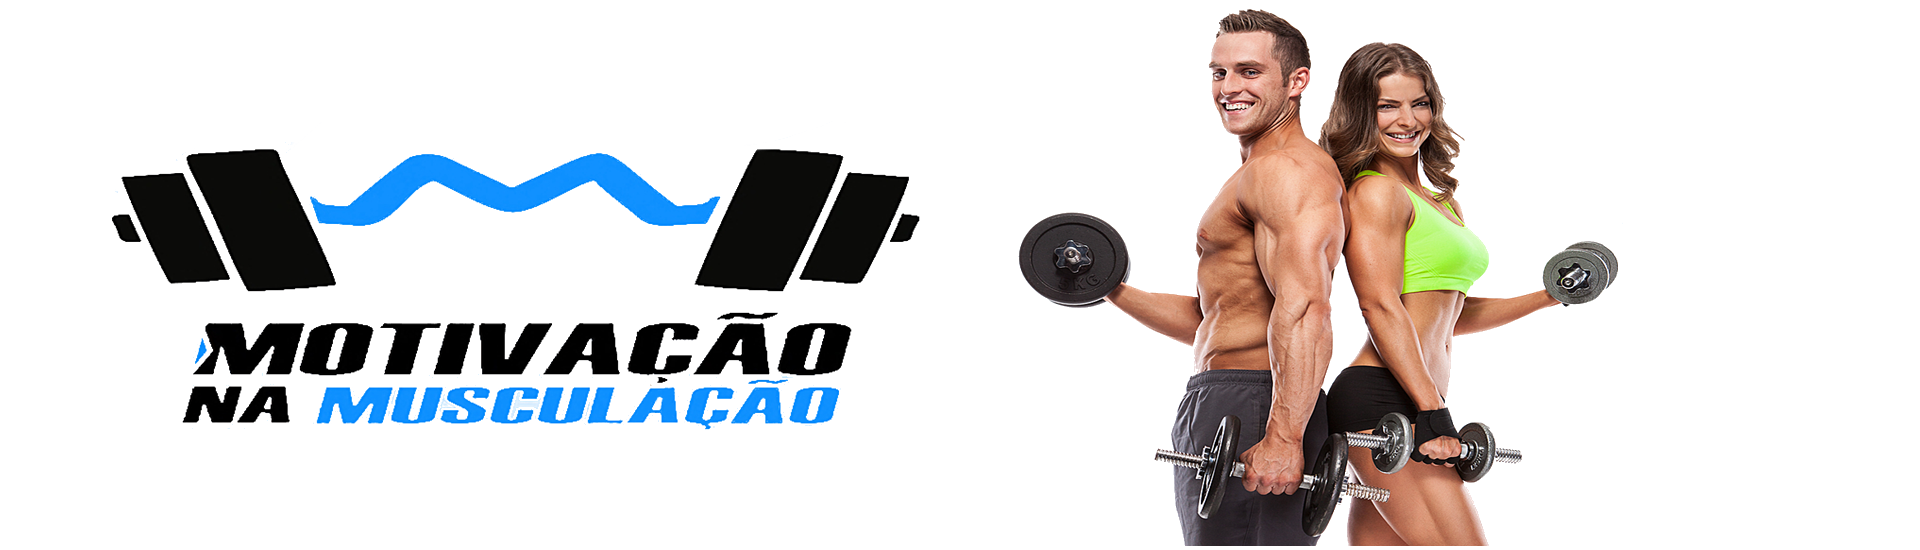 Musculação Png - Imagens De Musculação Em Png , HD Wallpaper & Backgrounds